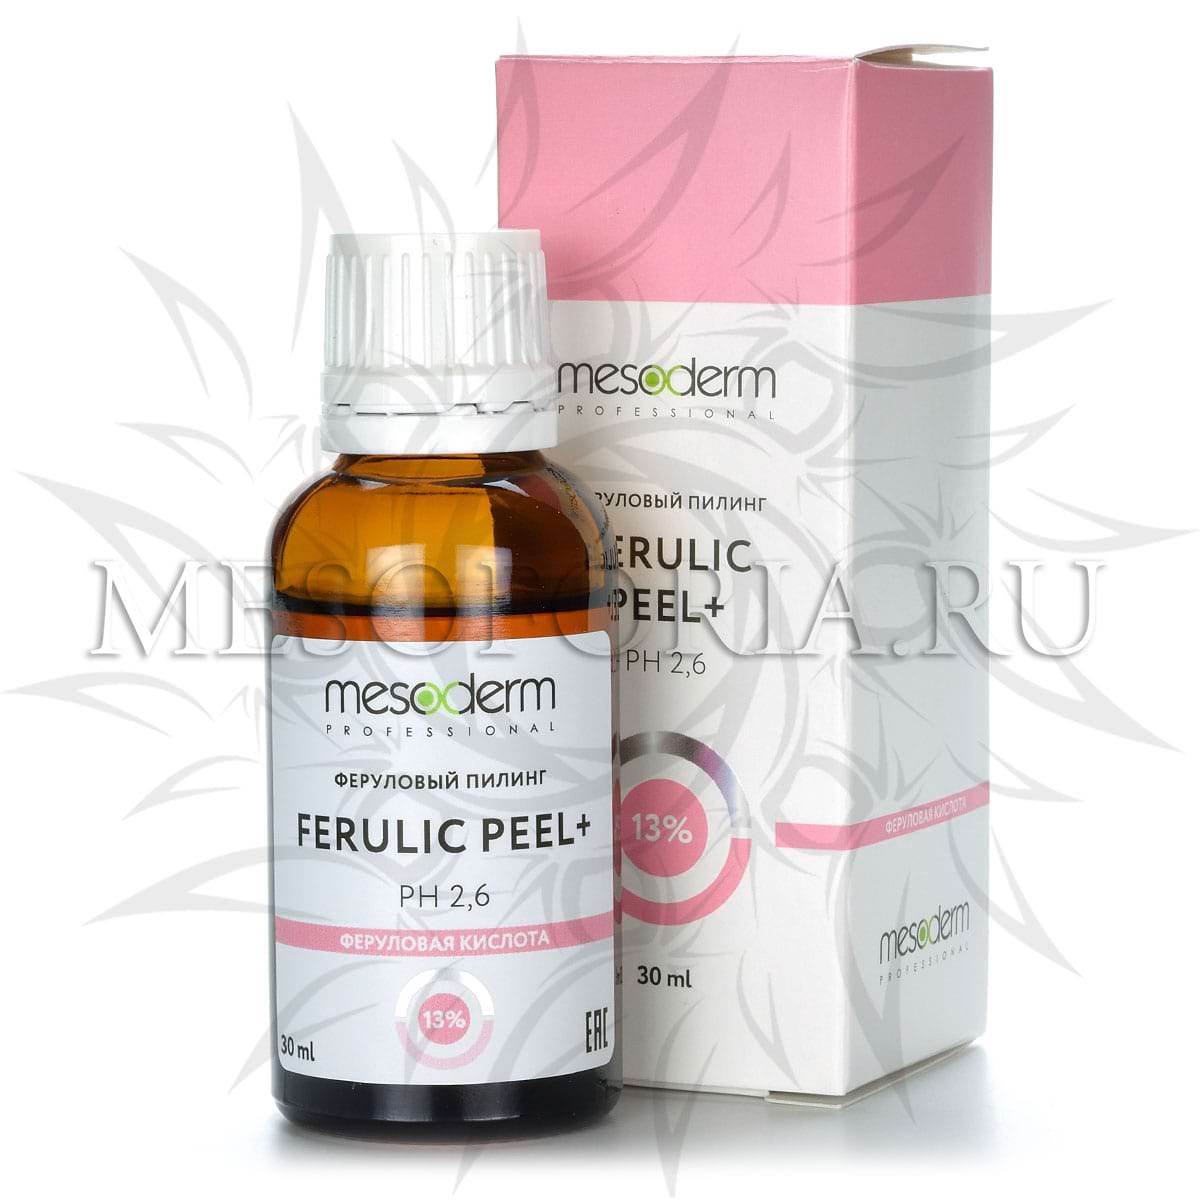 Феруловый пилинг с АНА-РНА комплексом / Ferulic Peel+ 13%, Mesoderm (Мезодерм), 30 мл